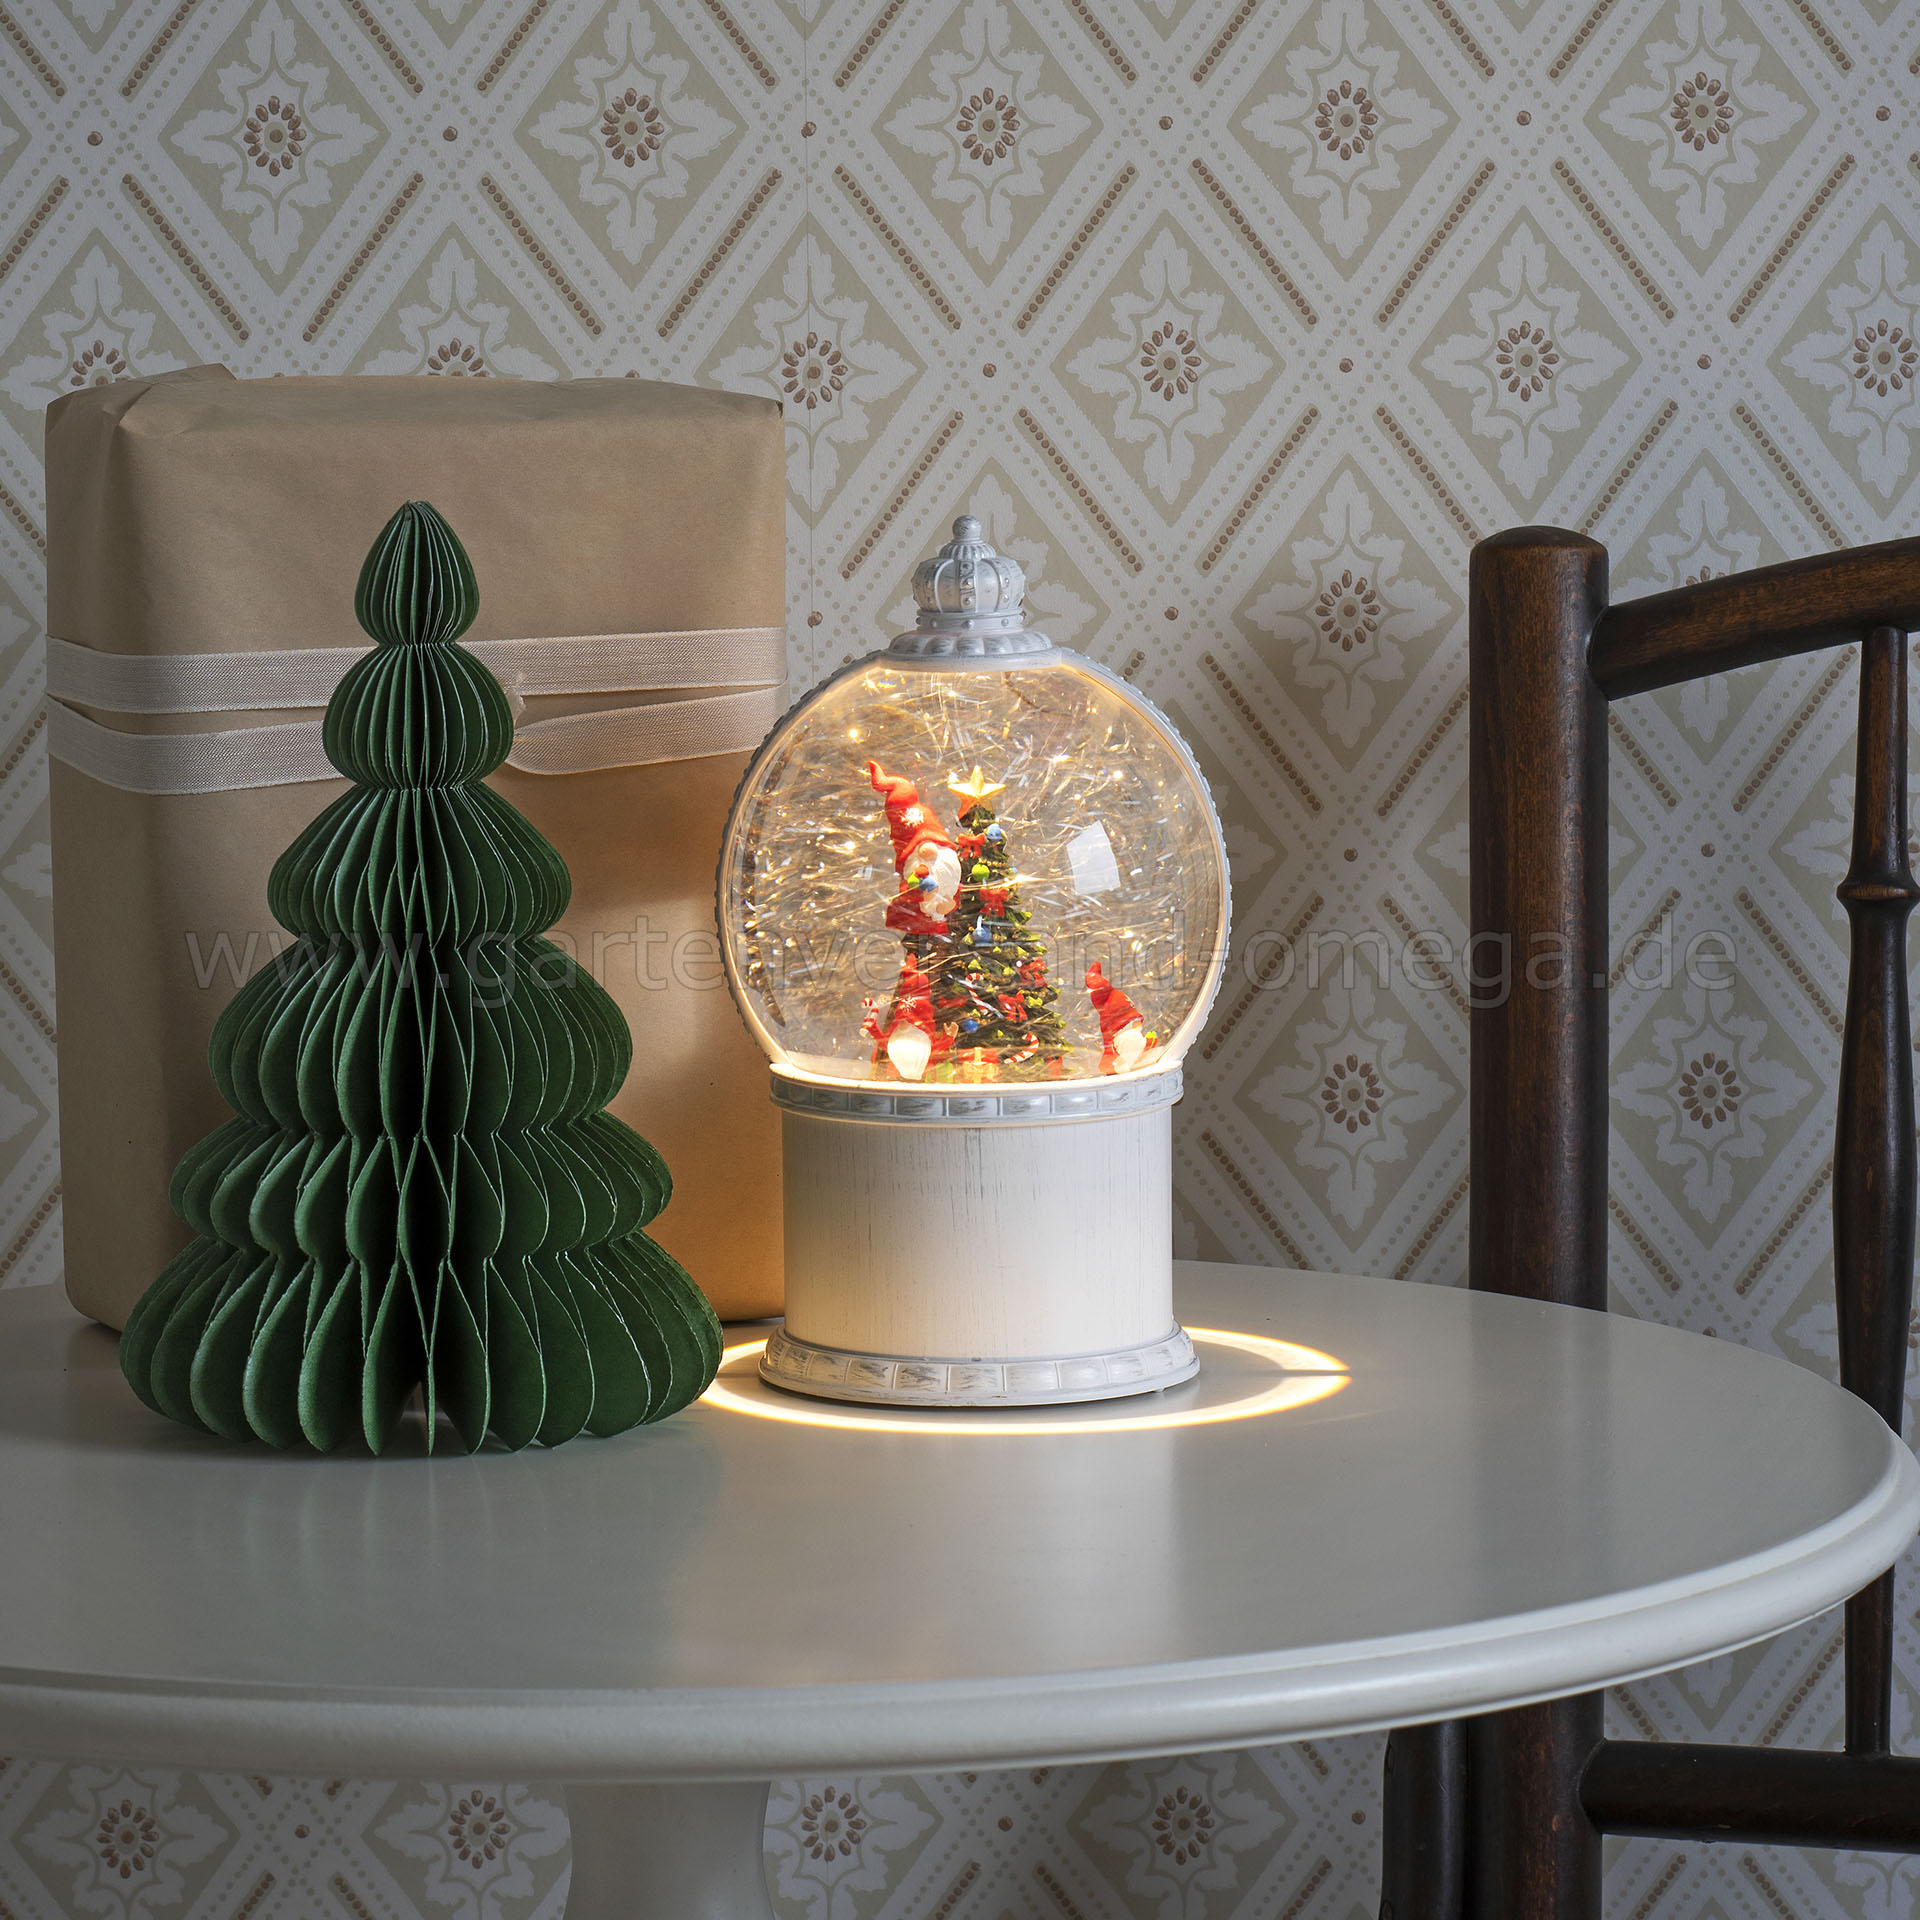 LED-Kugellaterne Wichtel mit Christbaum Schneekugel-Dekoration Weihnachtsbeleuchtung wie wassergefüllte LED Santas, Schneekugel-Laterne, Kugellaterne Weihnachtswichtel, Weihnachtsbeleuchtung Schneekugel, 